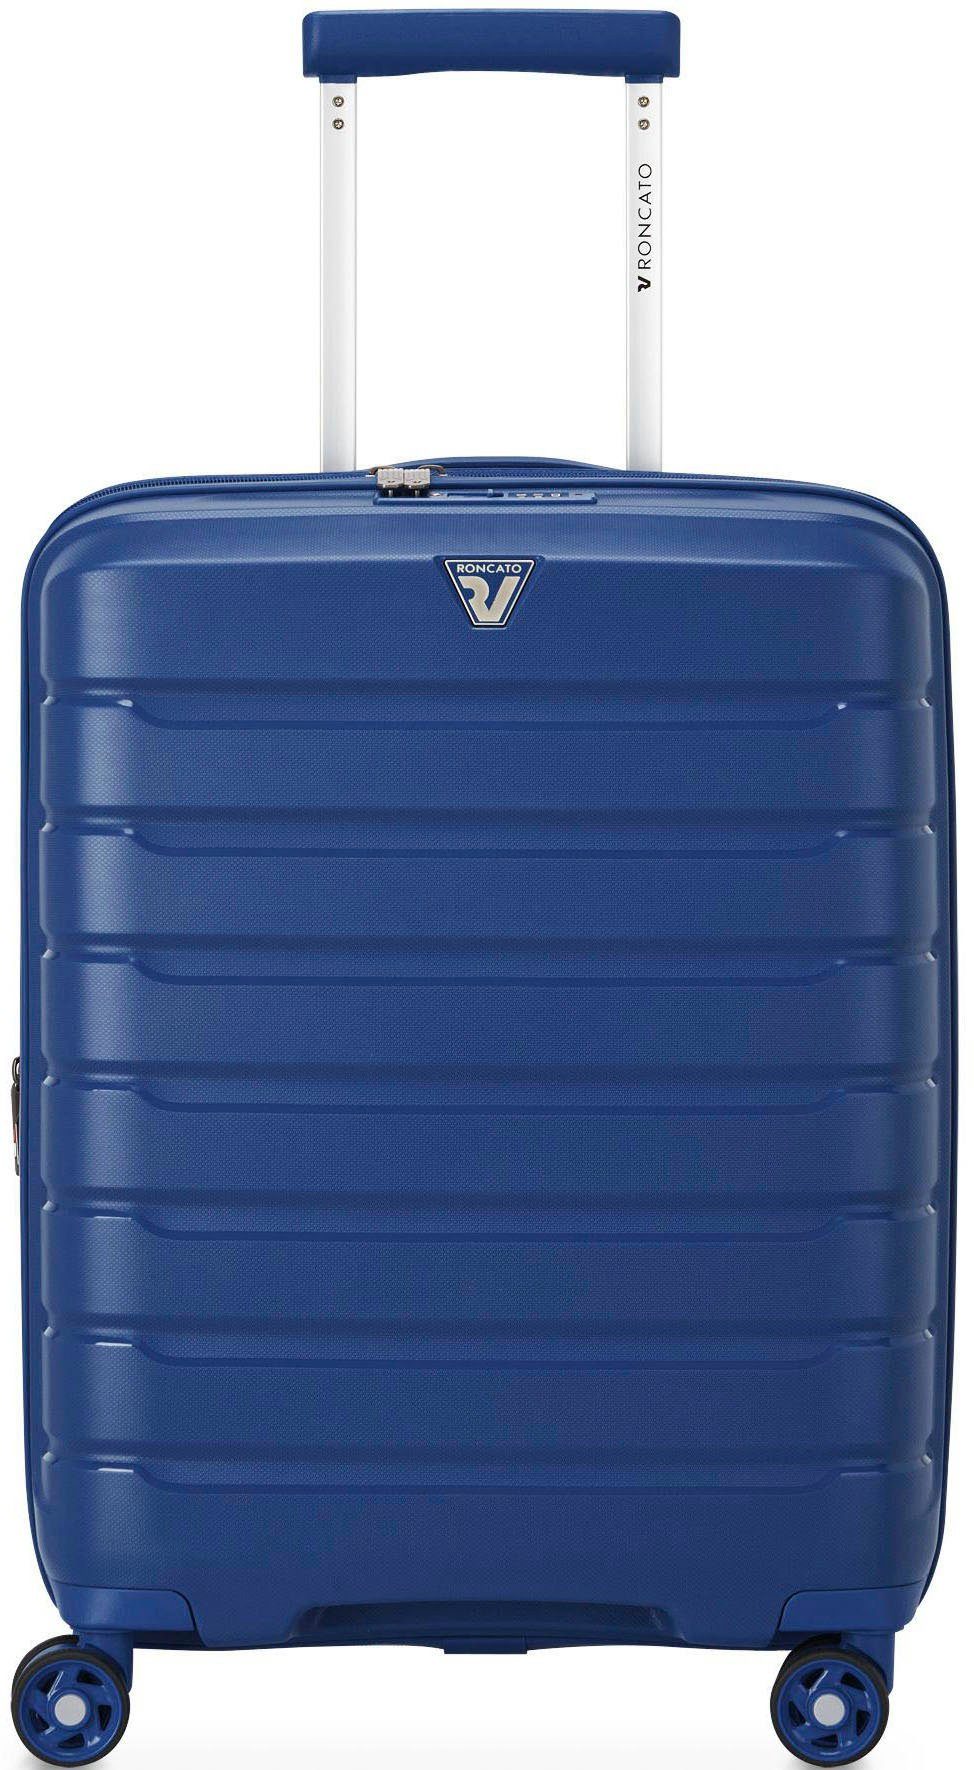 RONCATO Hartschalen-Trolley B-FLYING Carry-on, 55 cm, dunkelblau, 4 Rollen, Handgepäck-Koffer Reisekoffer mit Volumenerweiterung und TSA Schloss